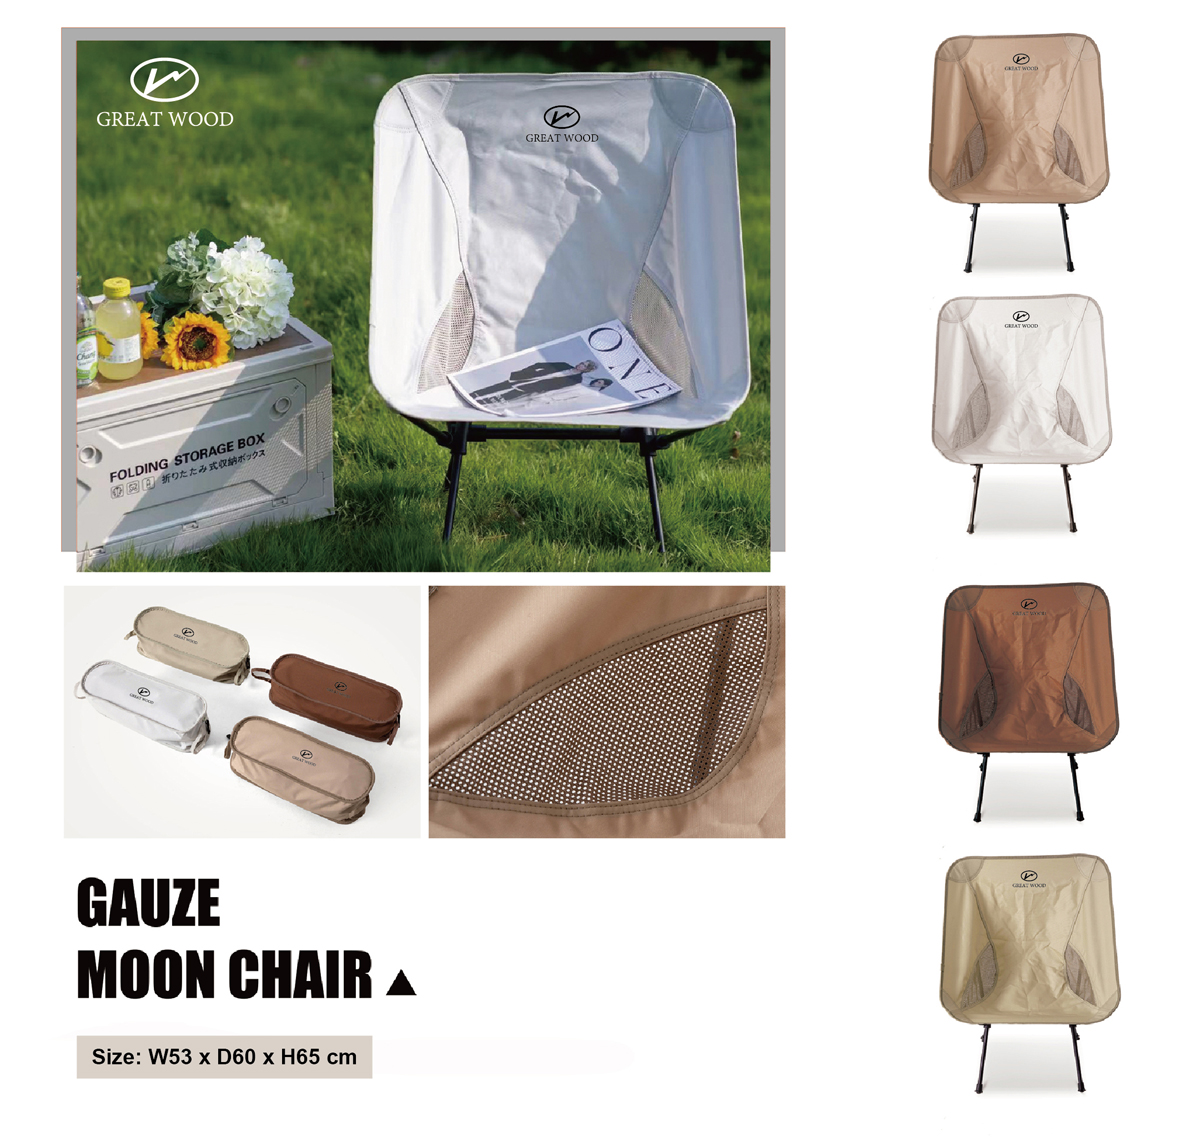 Portable Moon Chair Foldable Beach Chair GW720014